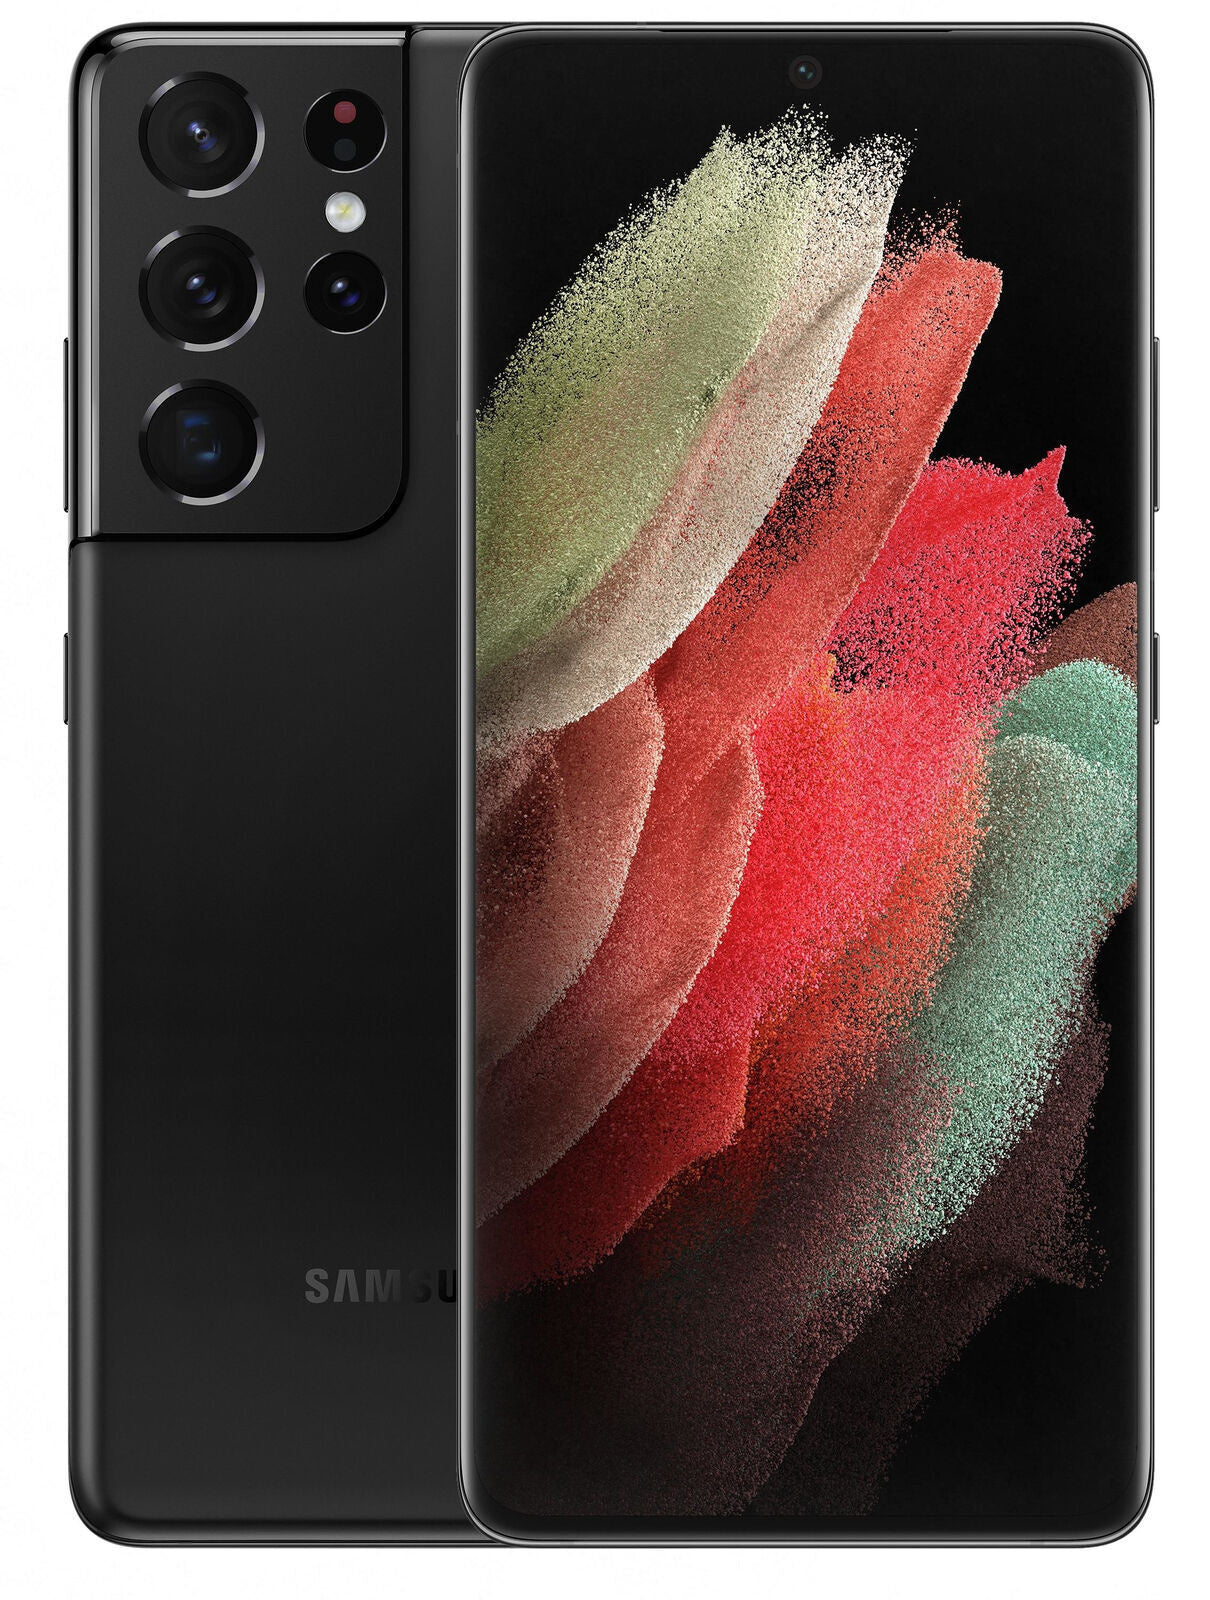 Samsung S21 Ultra 5G 256GB Phantom Black (Grade B) Handset